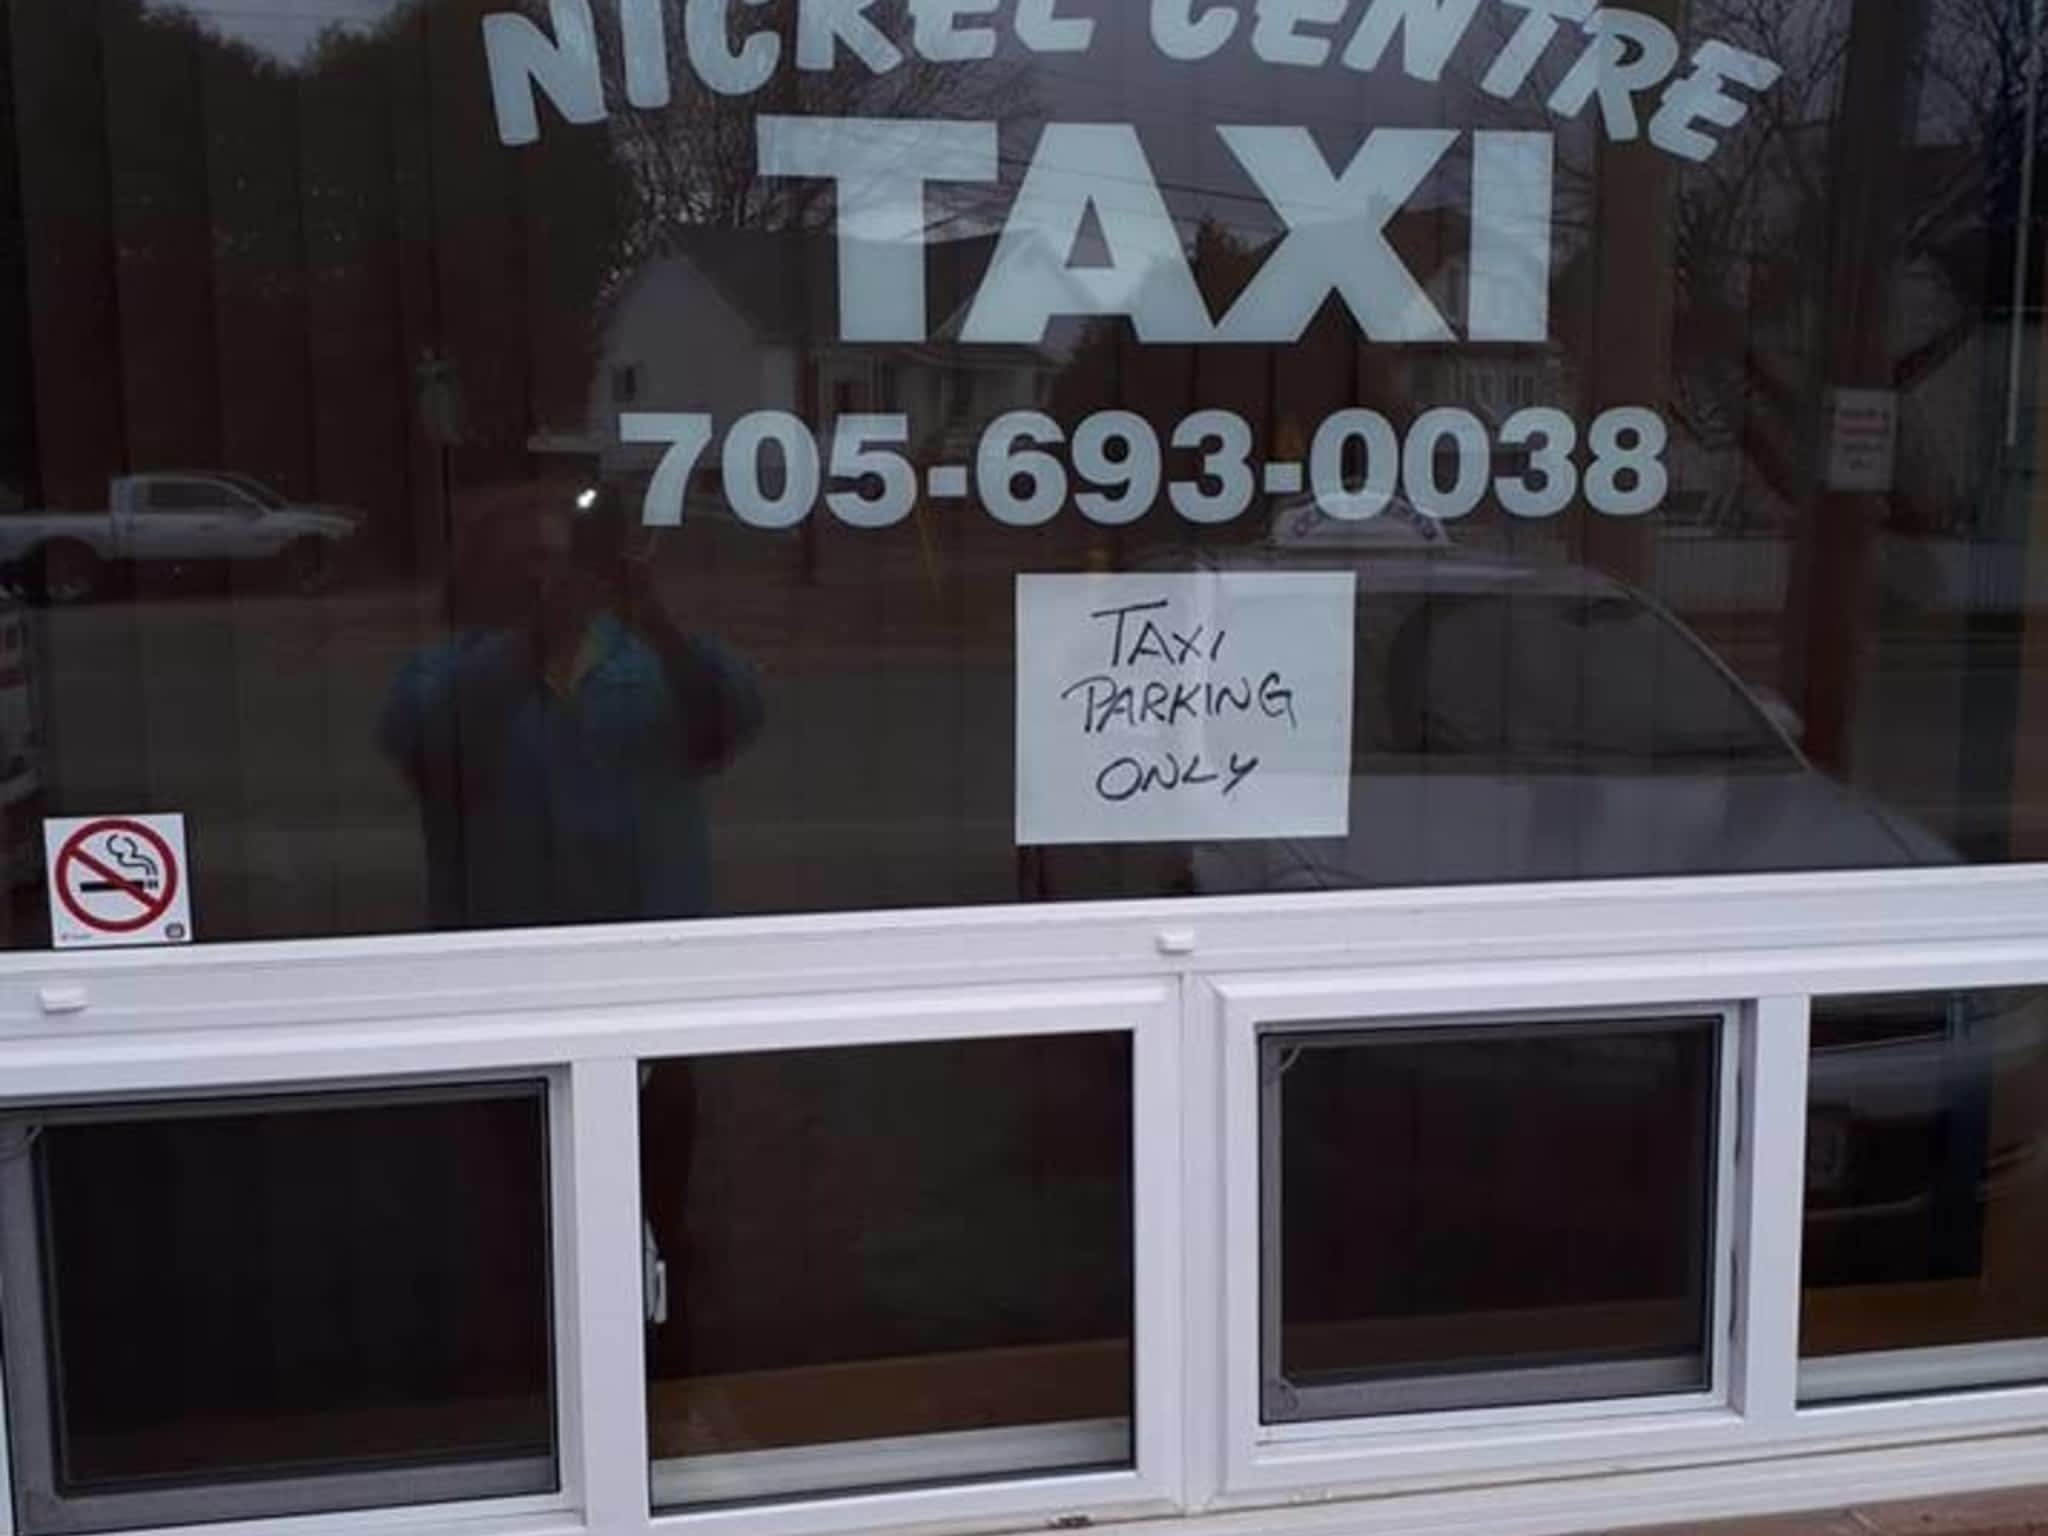 photo Garson Nickel Centre Taxi